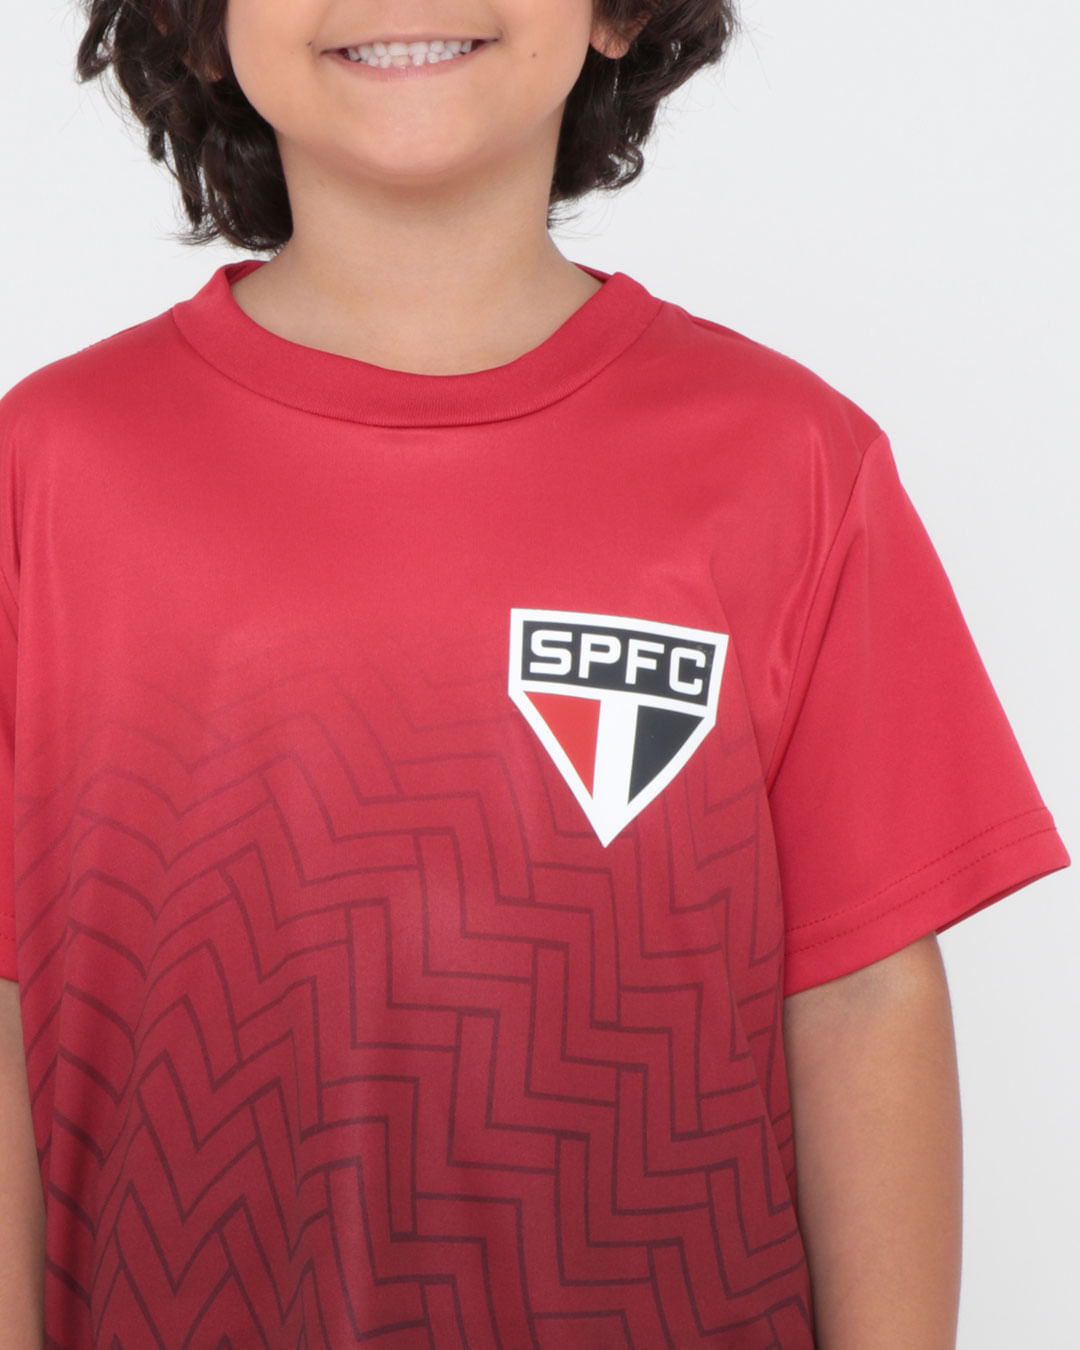 Camiseta-Trospr002-Mc-M410-Spfc---Vermelho-Medio